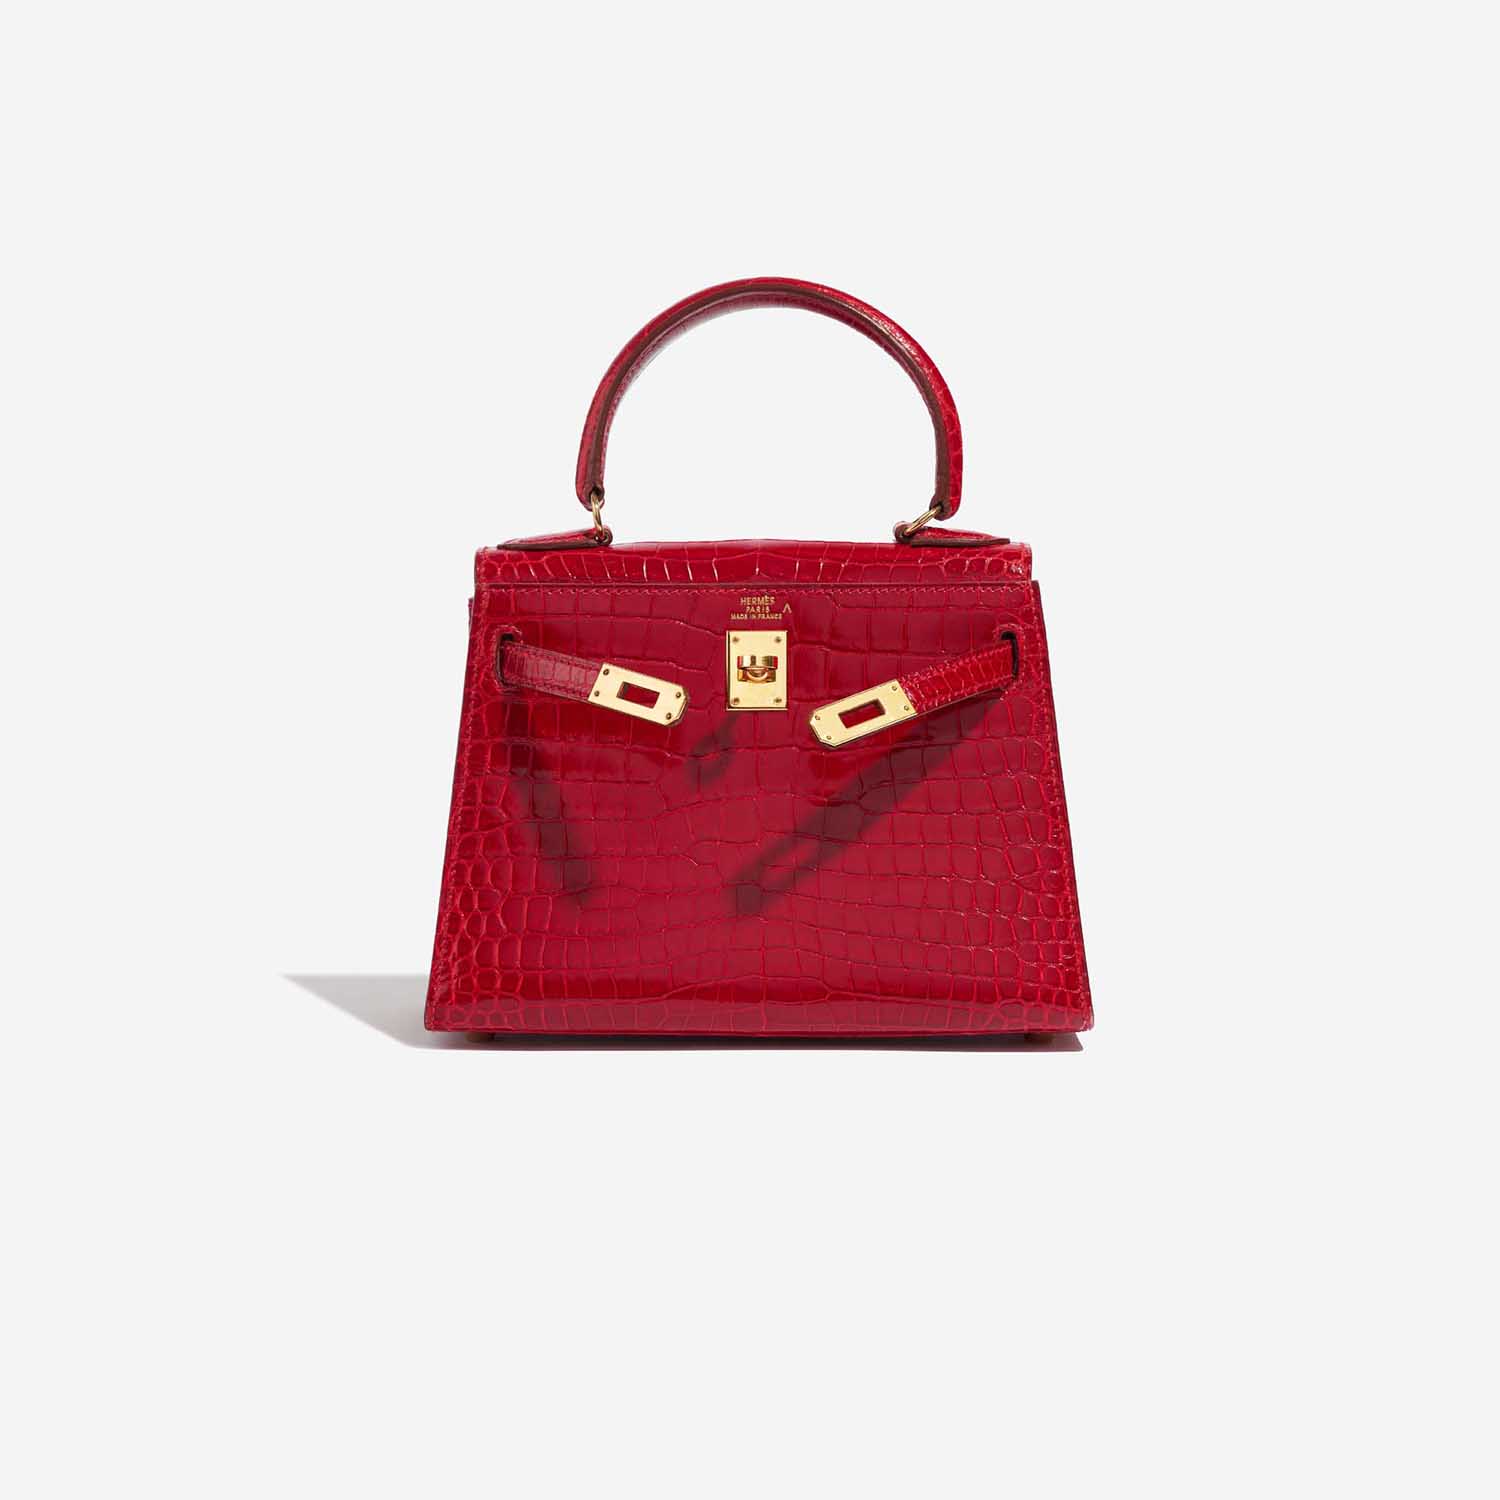 Pre-owned Hermès Tasche Kelly Mini Porosus Crocodile Braise Red Front Open | Verkaufen Sie Ihre Designer-Tasche auf Saclab.com